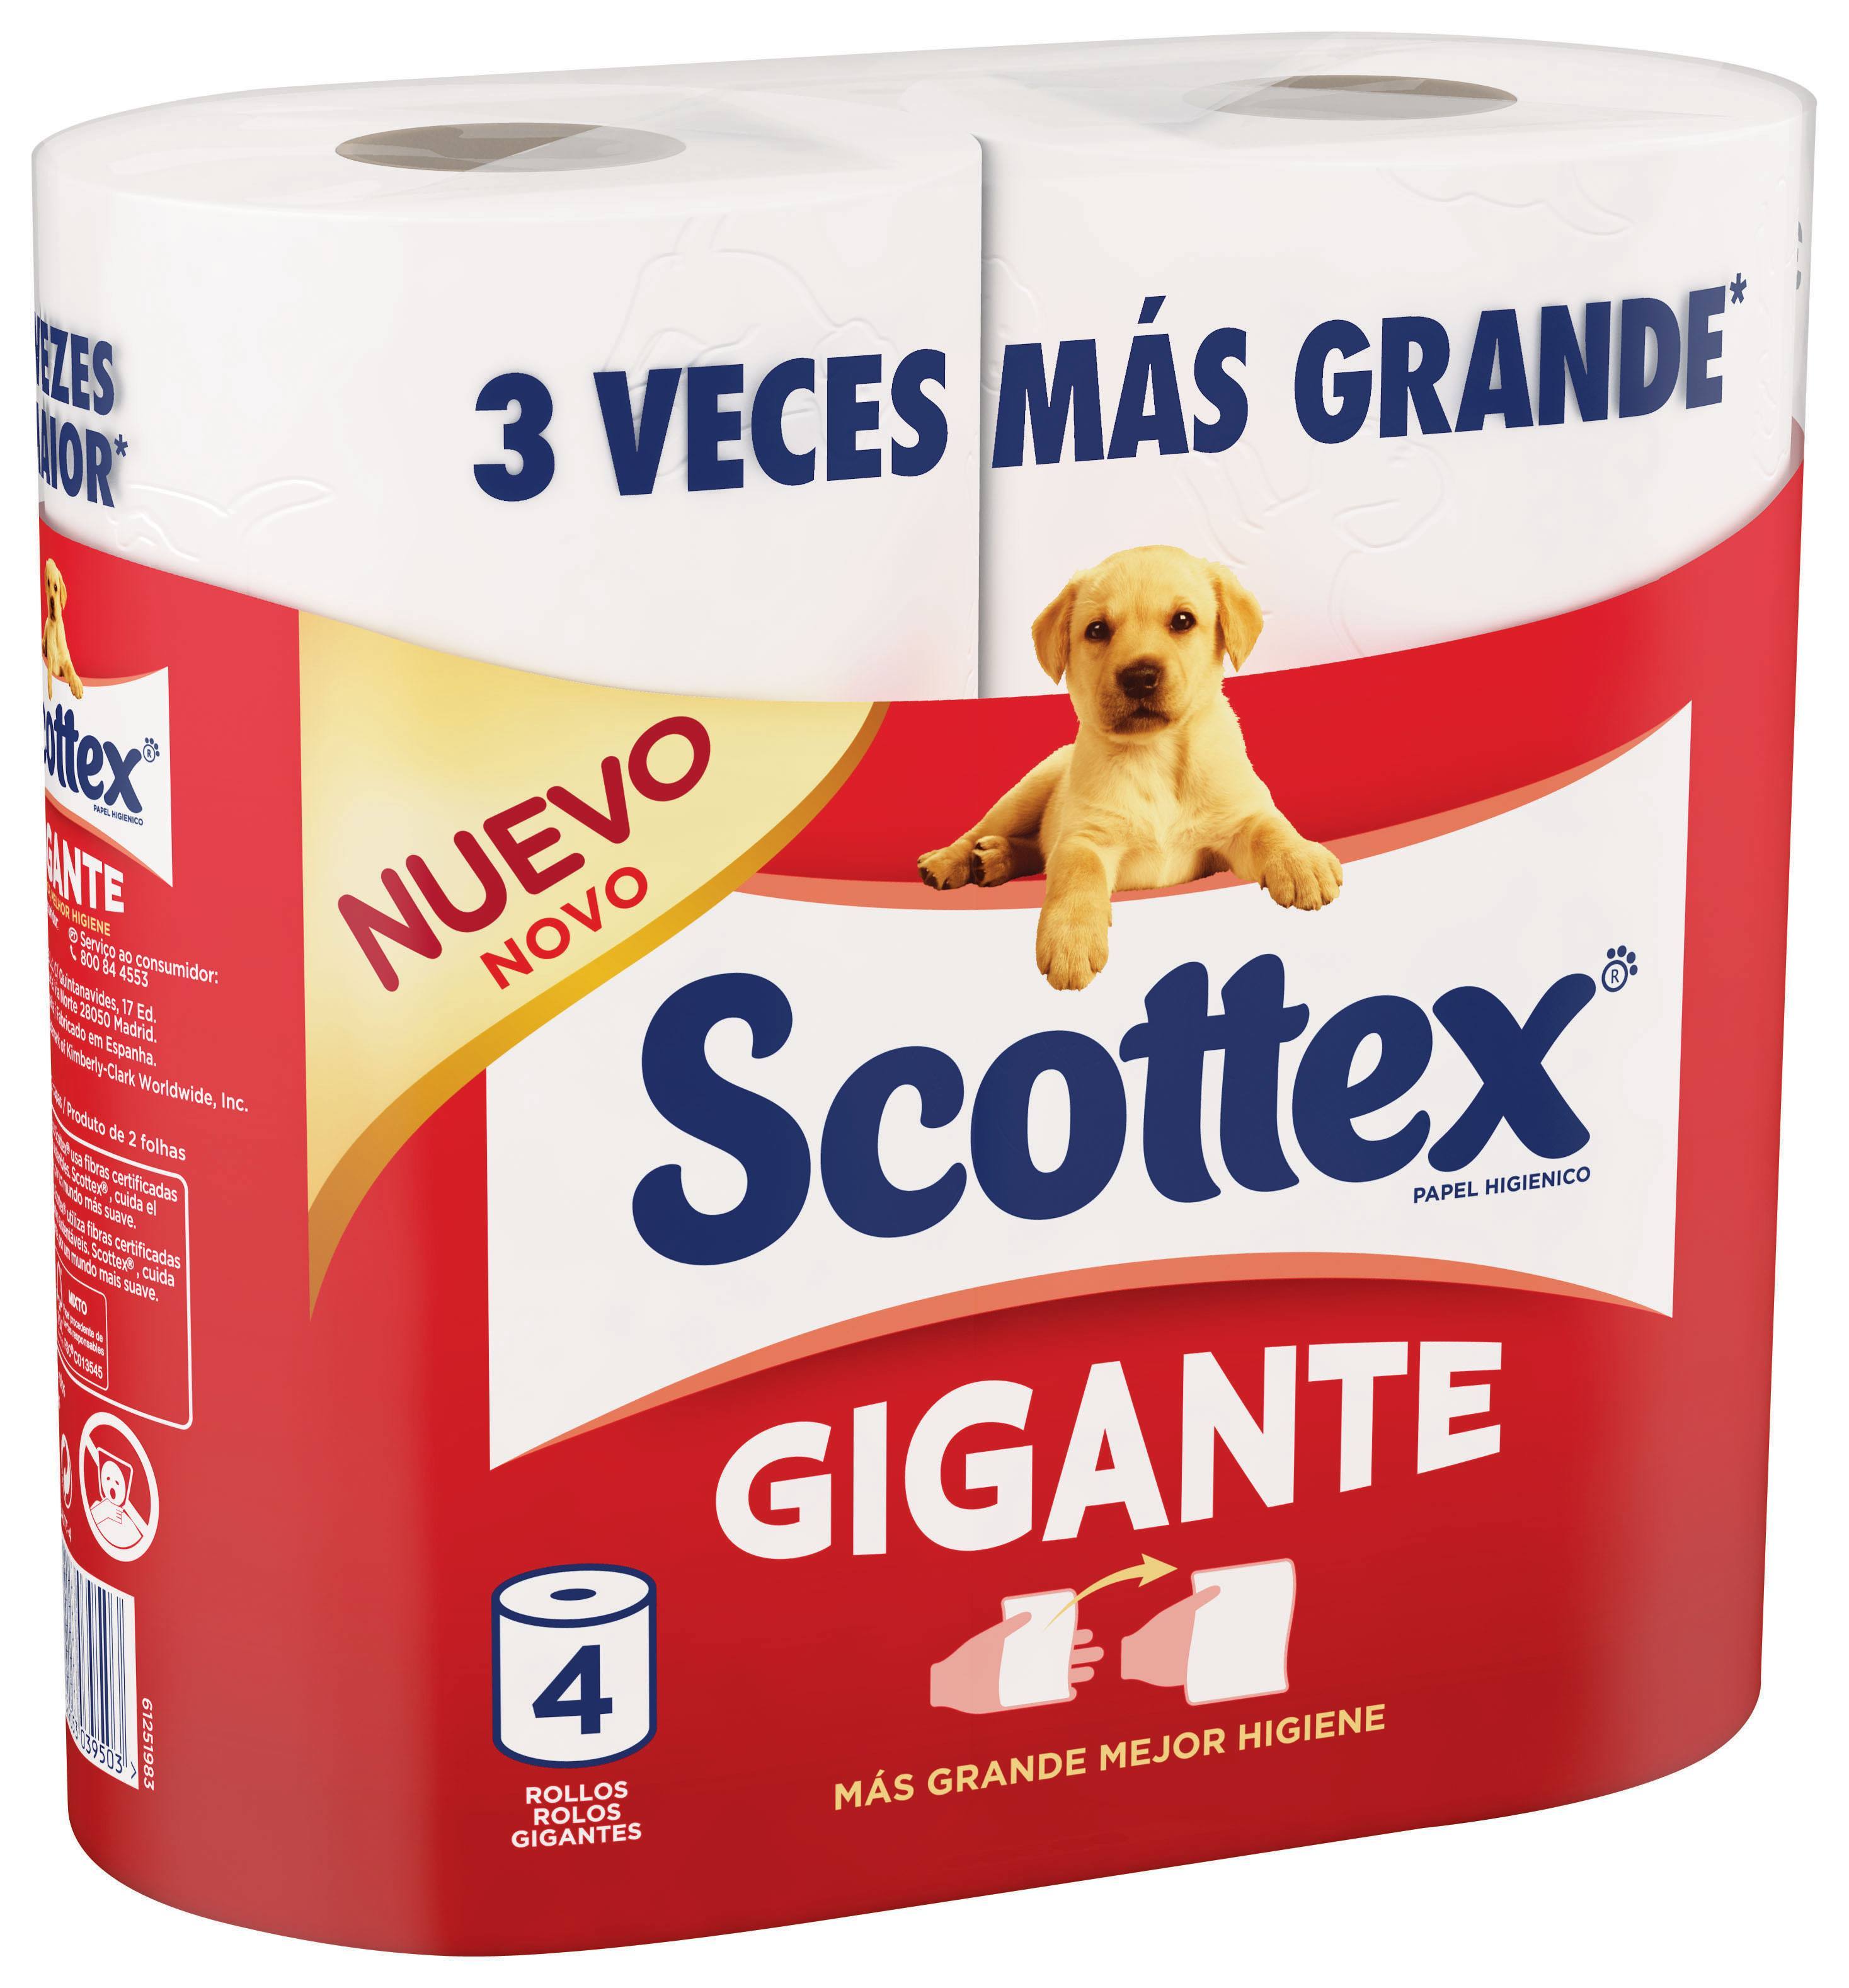 Scottex Gigante, el papel higiénico más grande del mercado - DARetail. La  actualidad del mundo del retail, la distribución comercial, los puntos de  venta y las franquicias